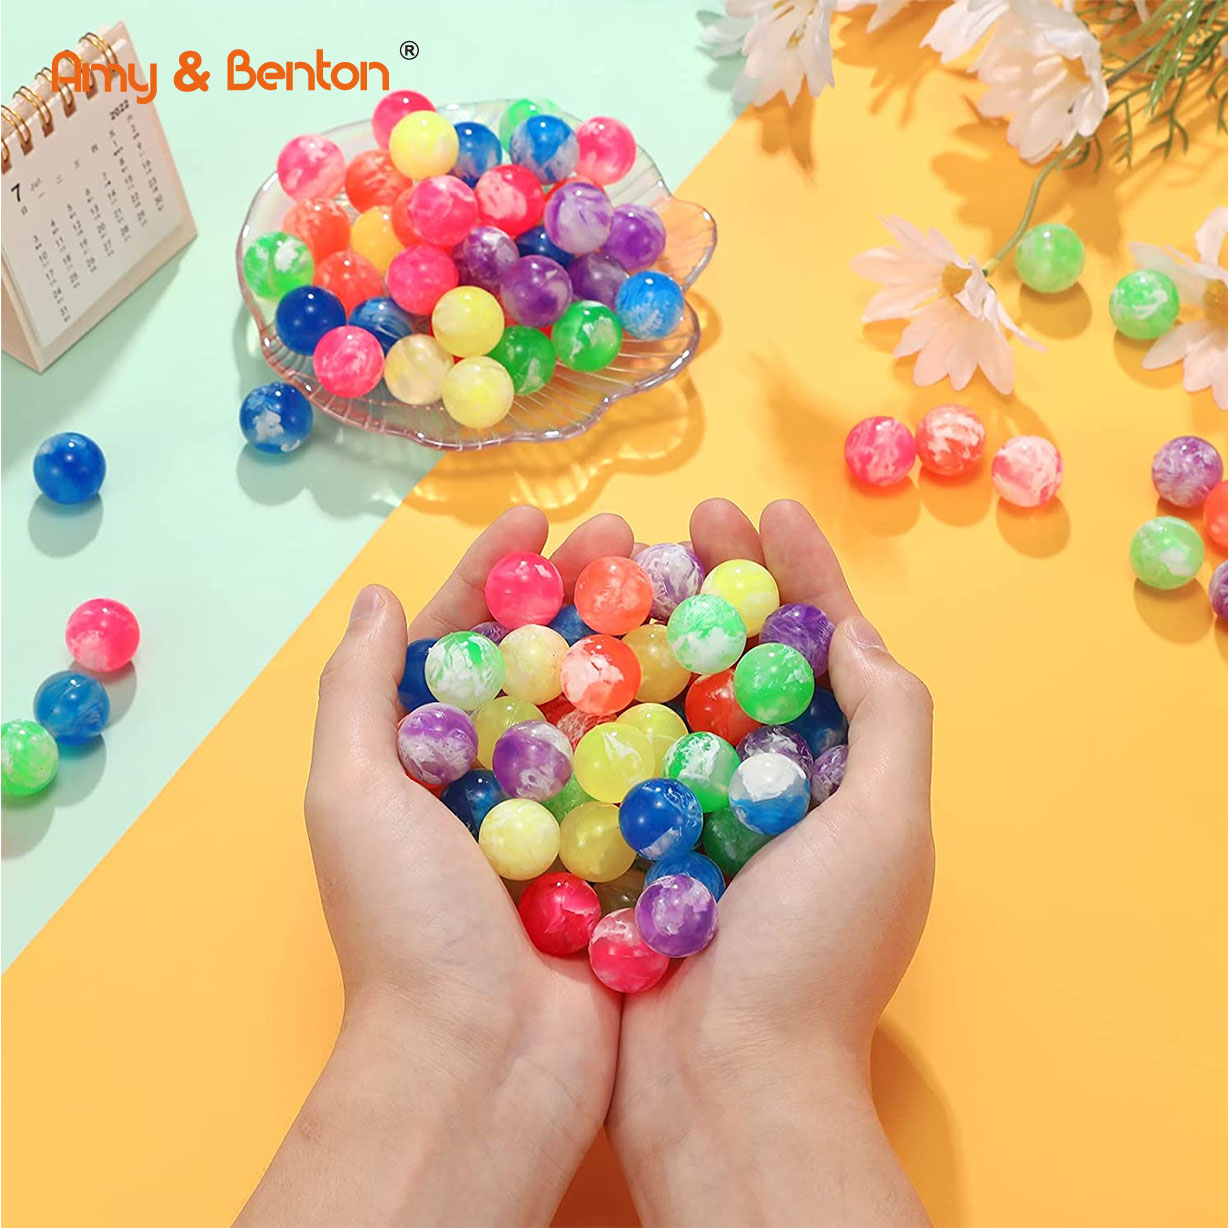 32 mm høje hoppebolde af gummi Sky hoppebolde Festgaver til børn Neon Swirl hoppebolde til spilpræmier salgsautomater